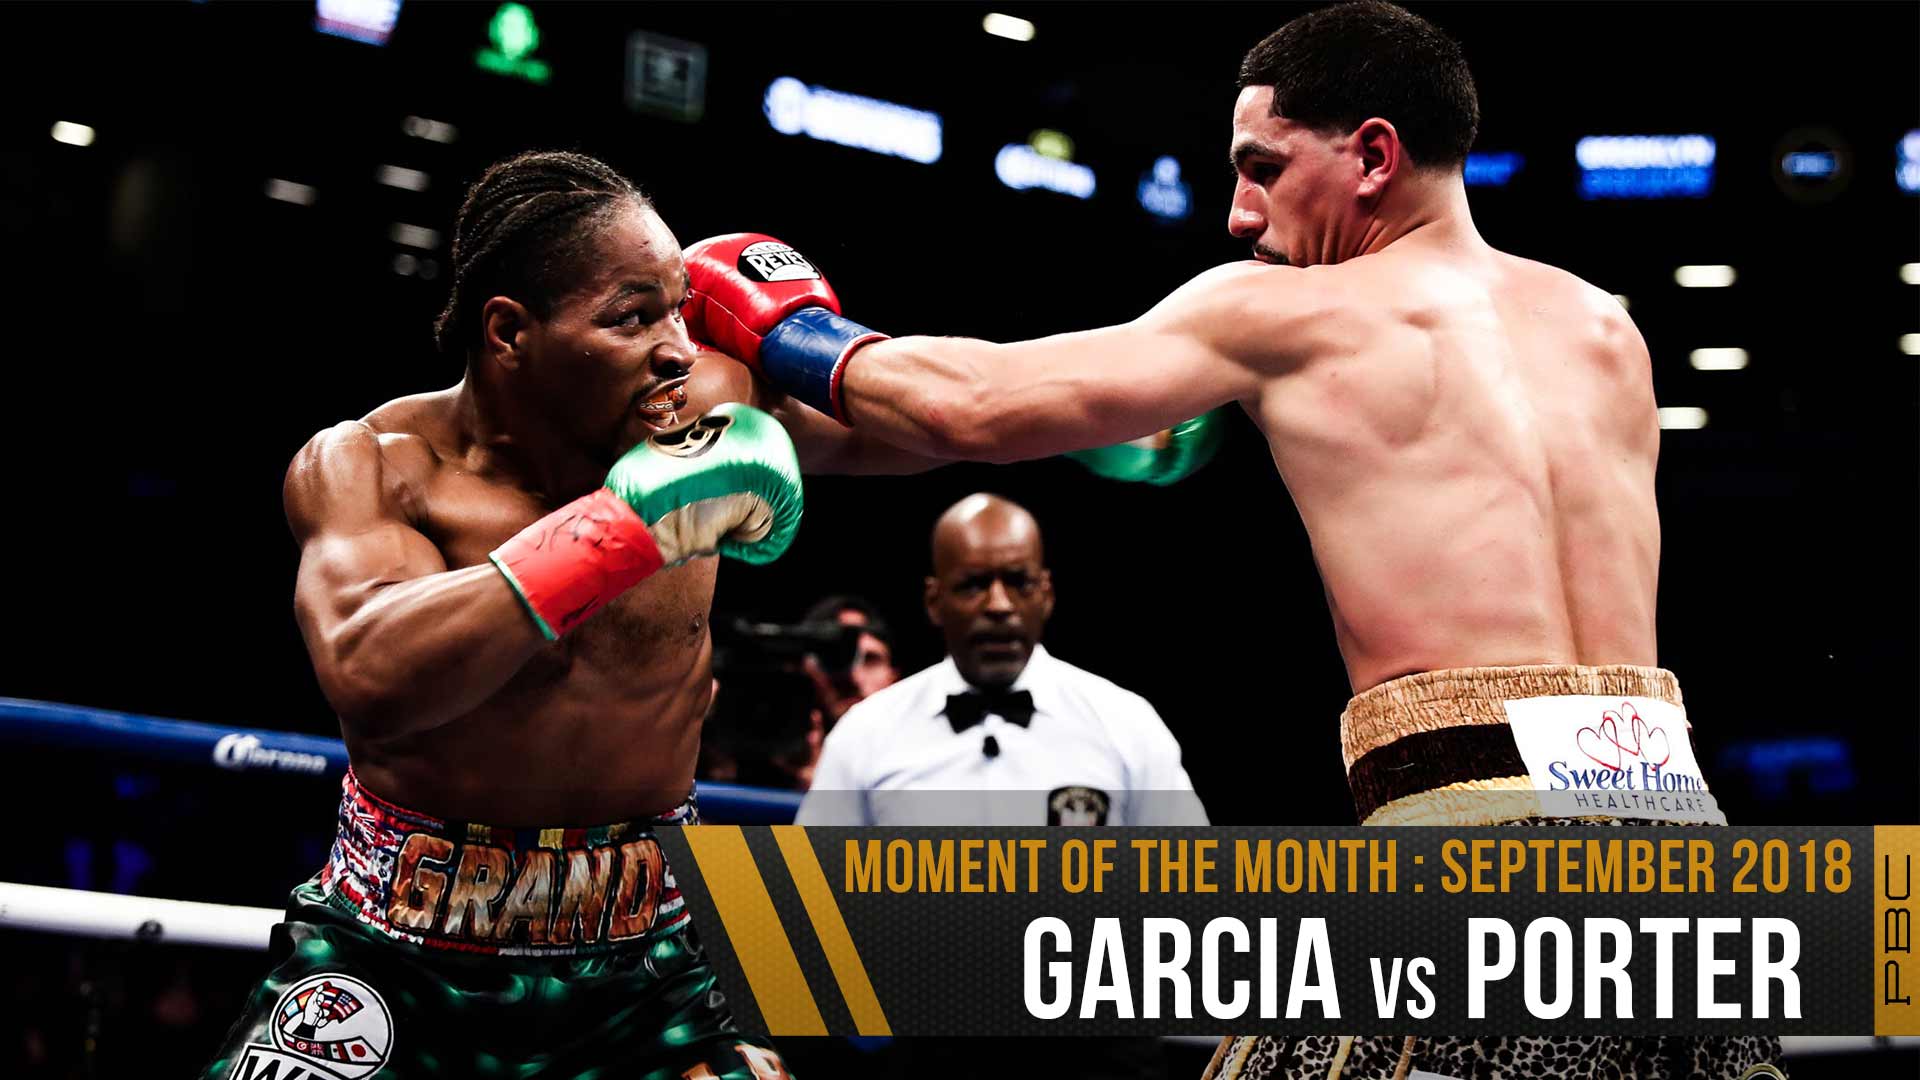 September 2018 Moment of the Month: Garcia vs Porter1920 x 1080